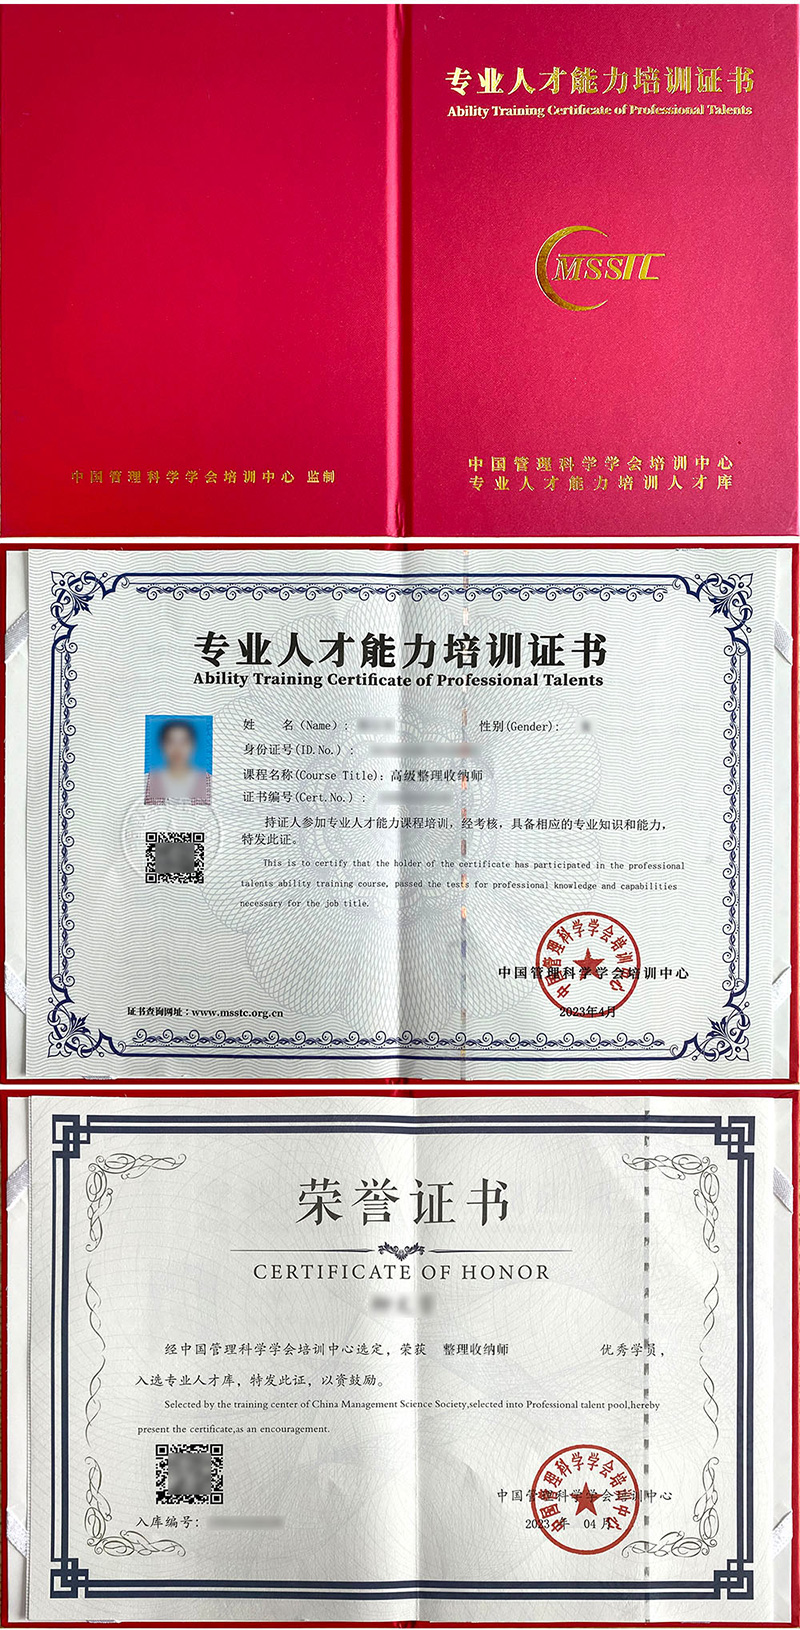 中国管理科学学会培训中心 专业人才能力培训证书 整理收纳师证证书样本